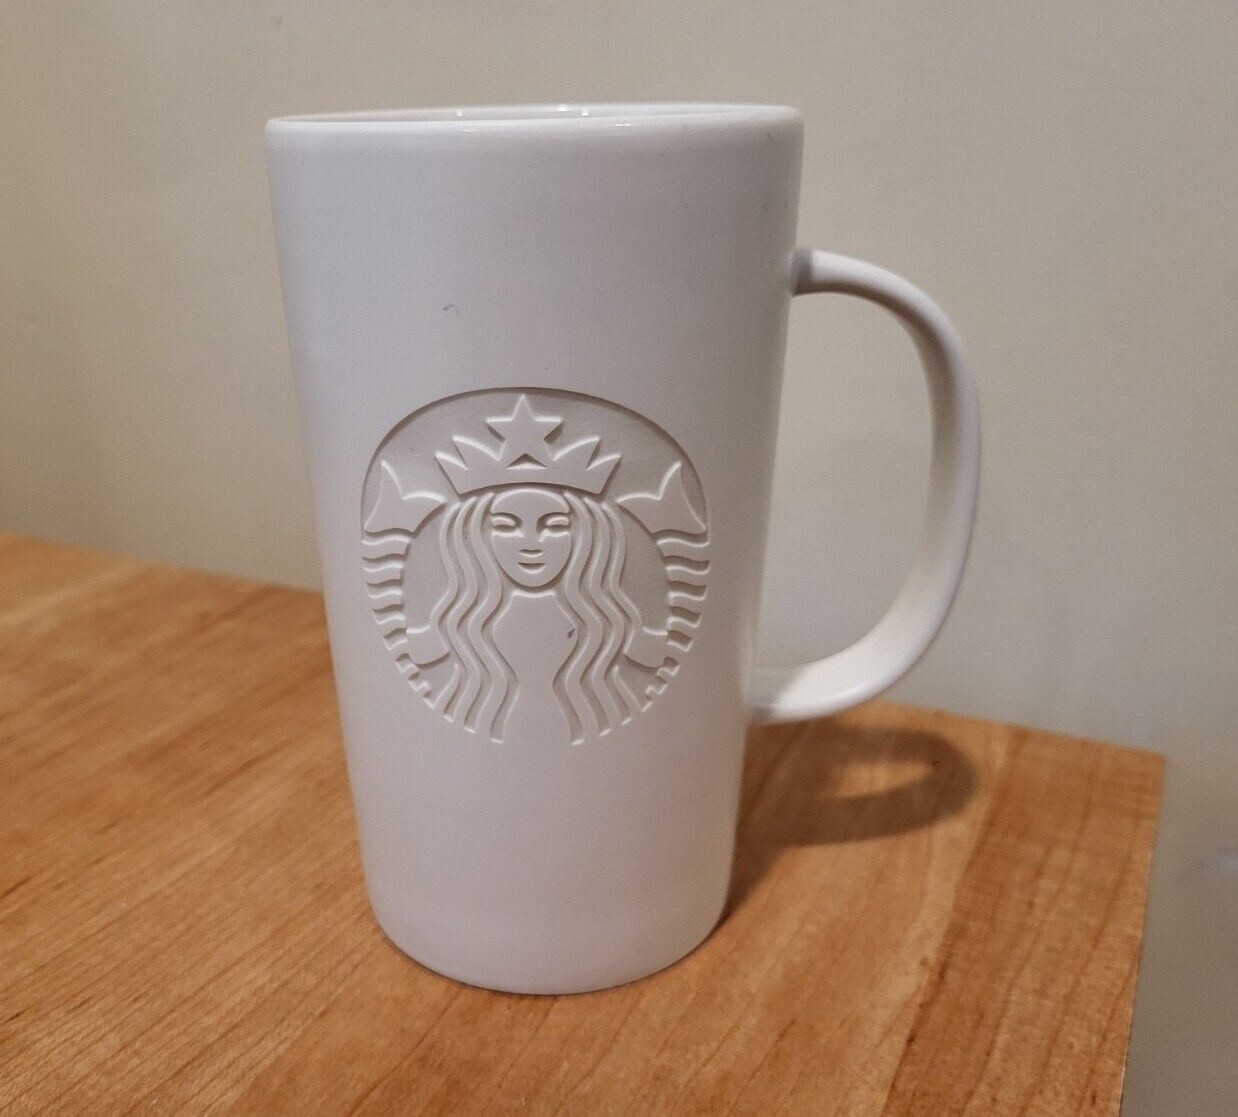 STARBUCKS  Tall  Coffee Mug  2014  EMBOSSED MERMAID  16 oz.